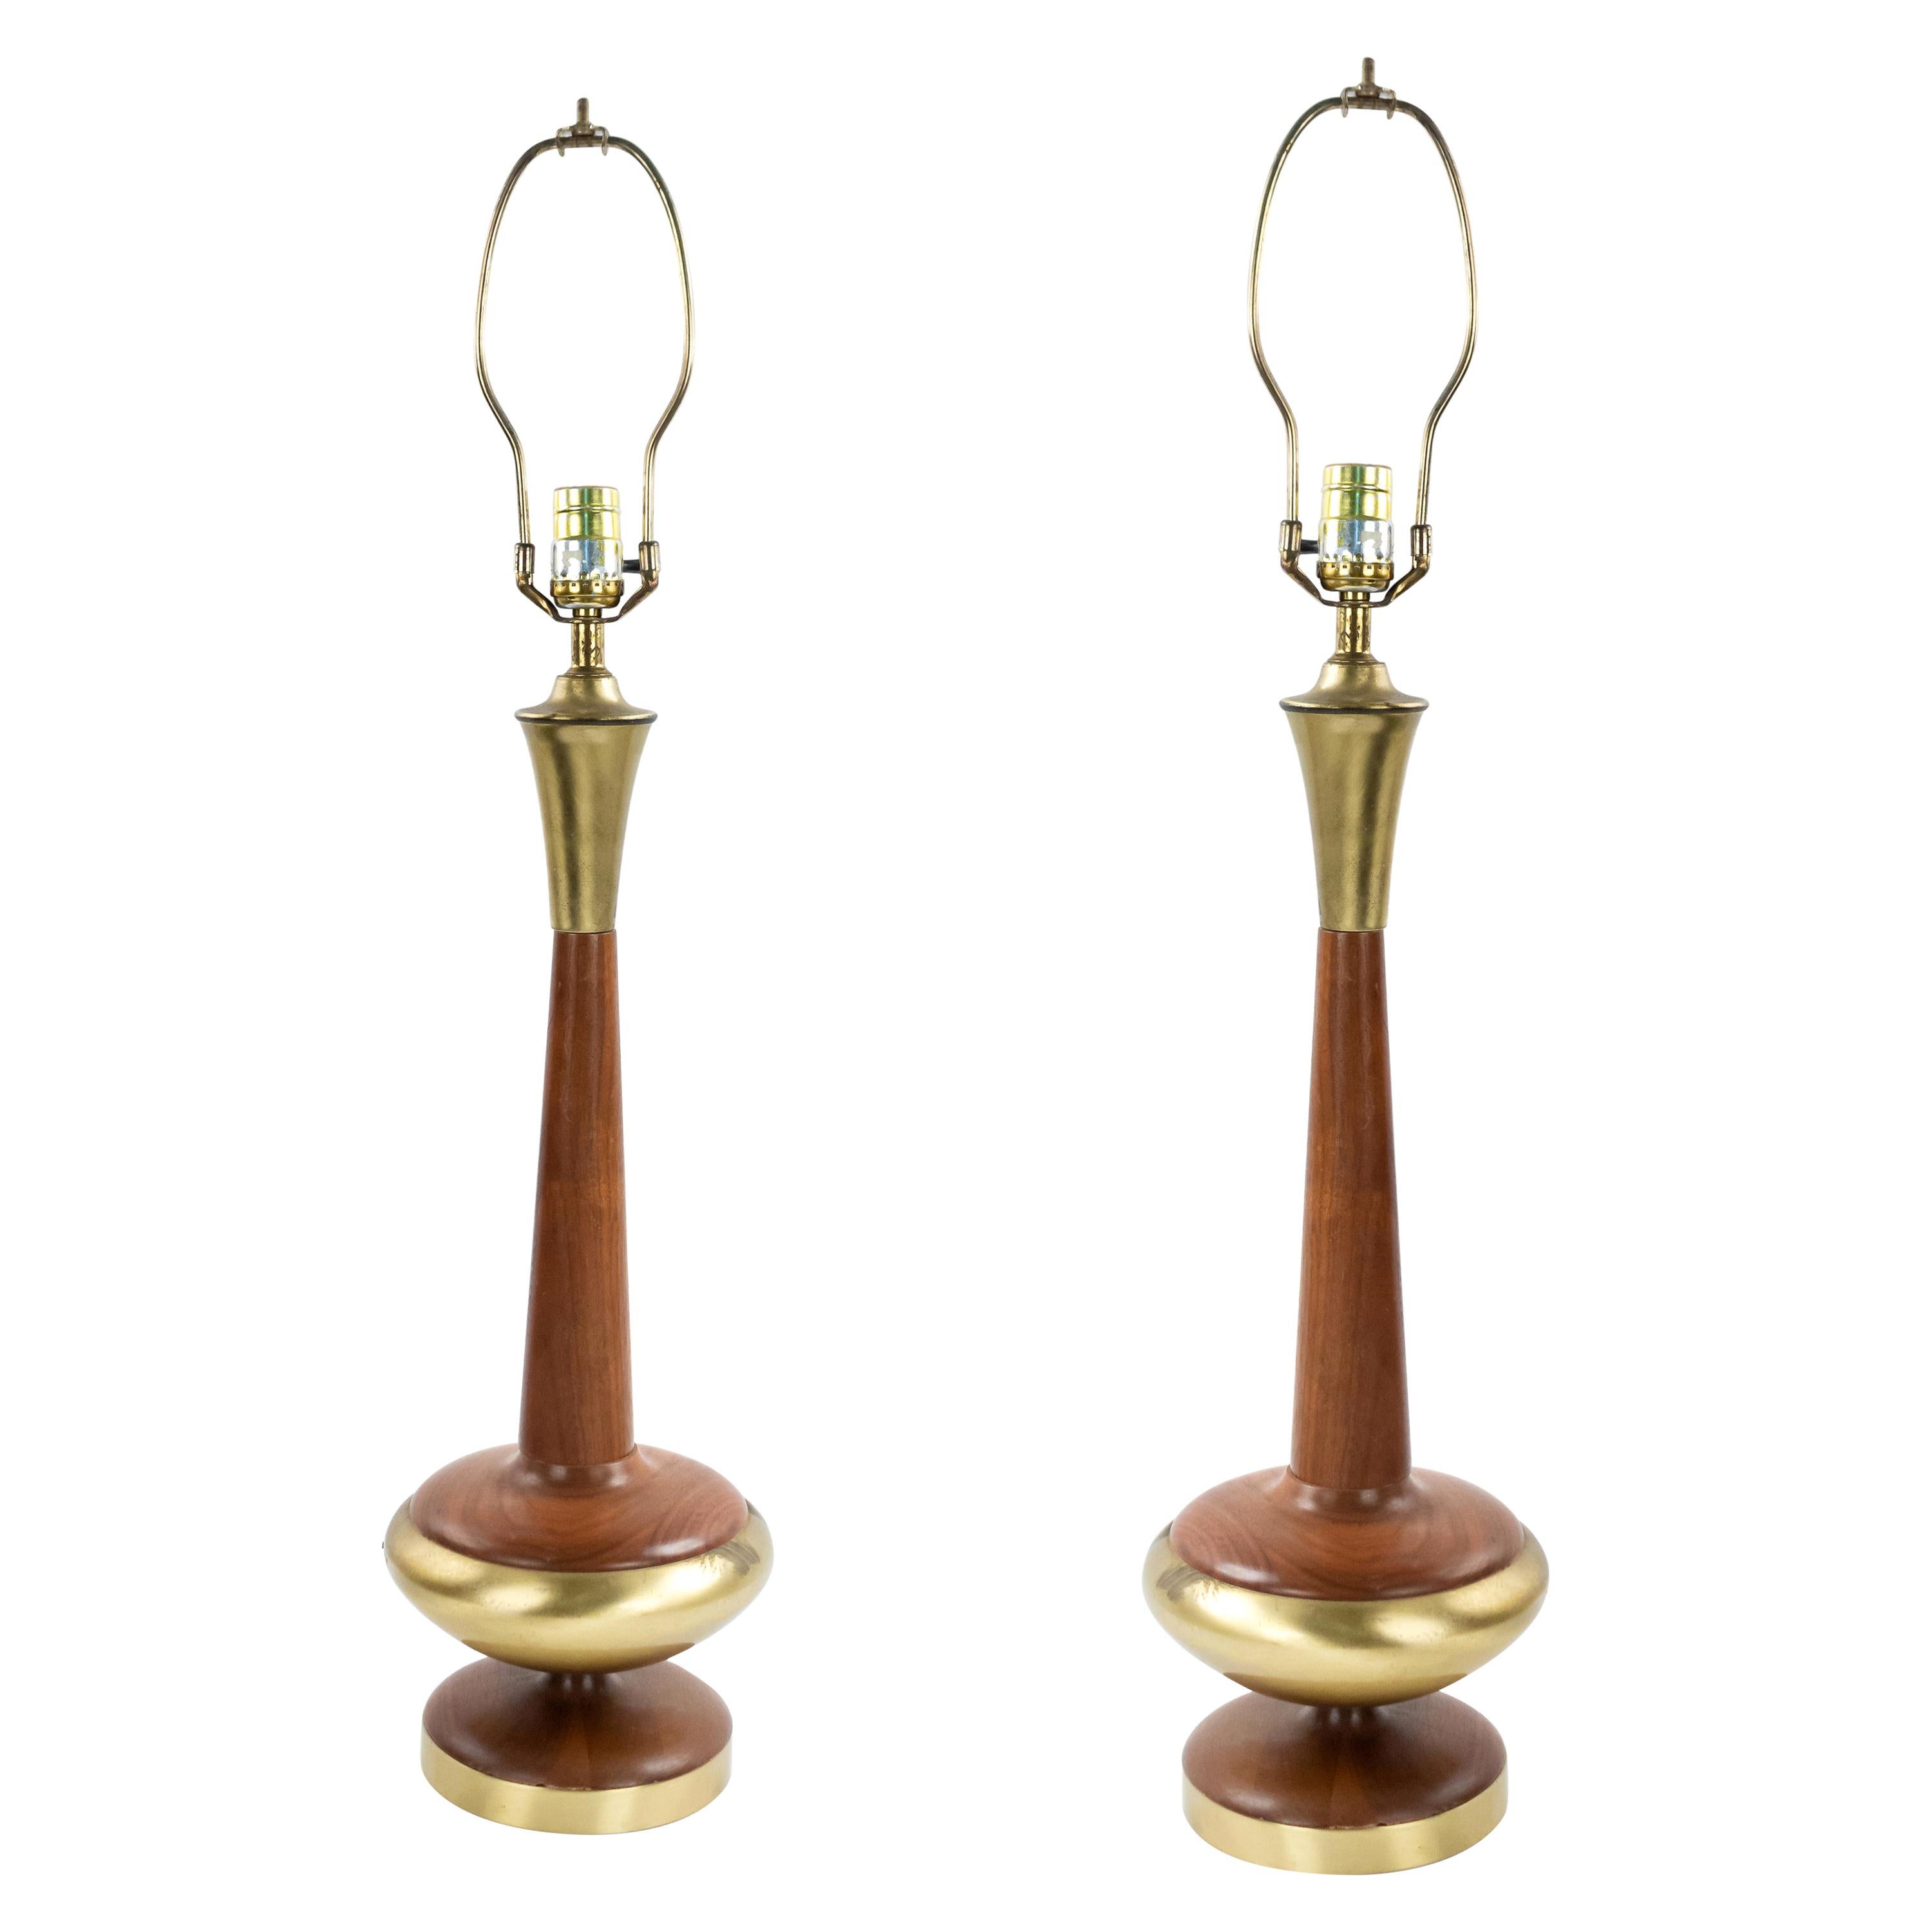 Post War Scandinavian Teak and Brass Table Lamps